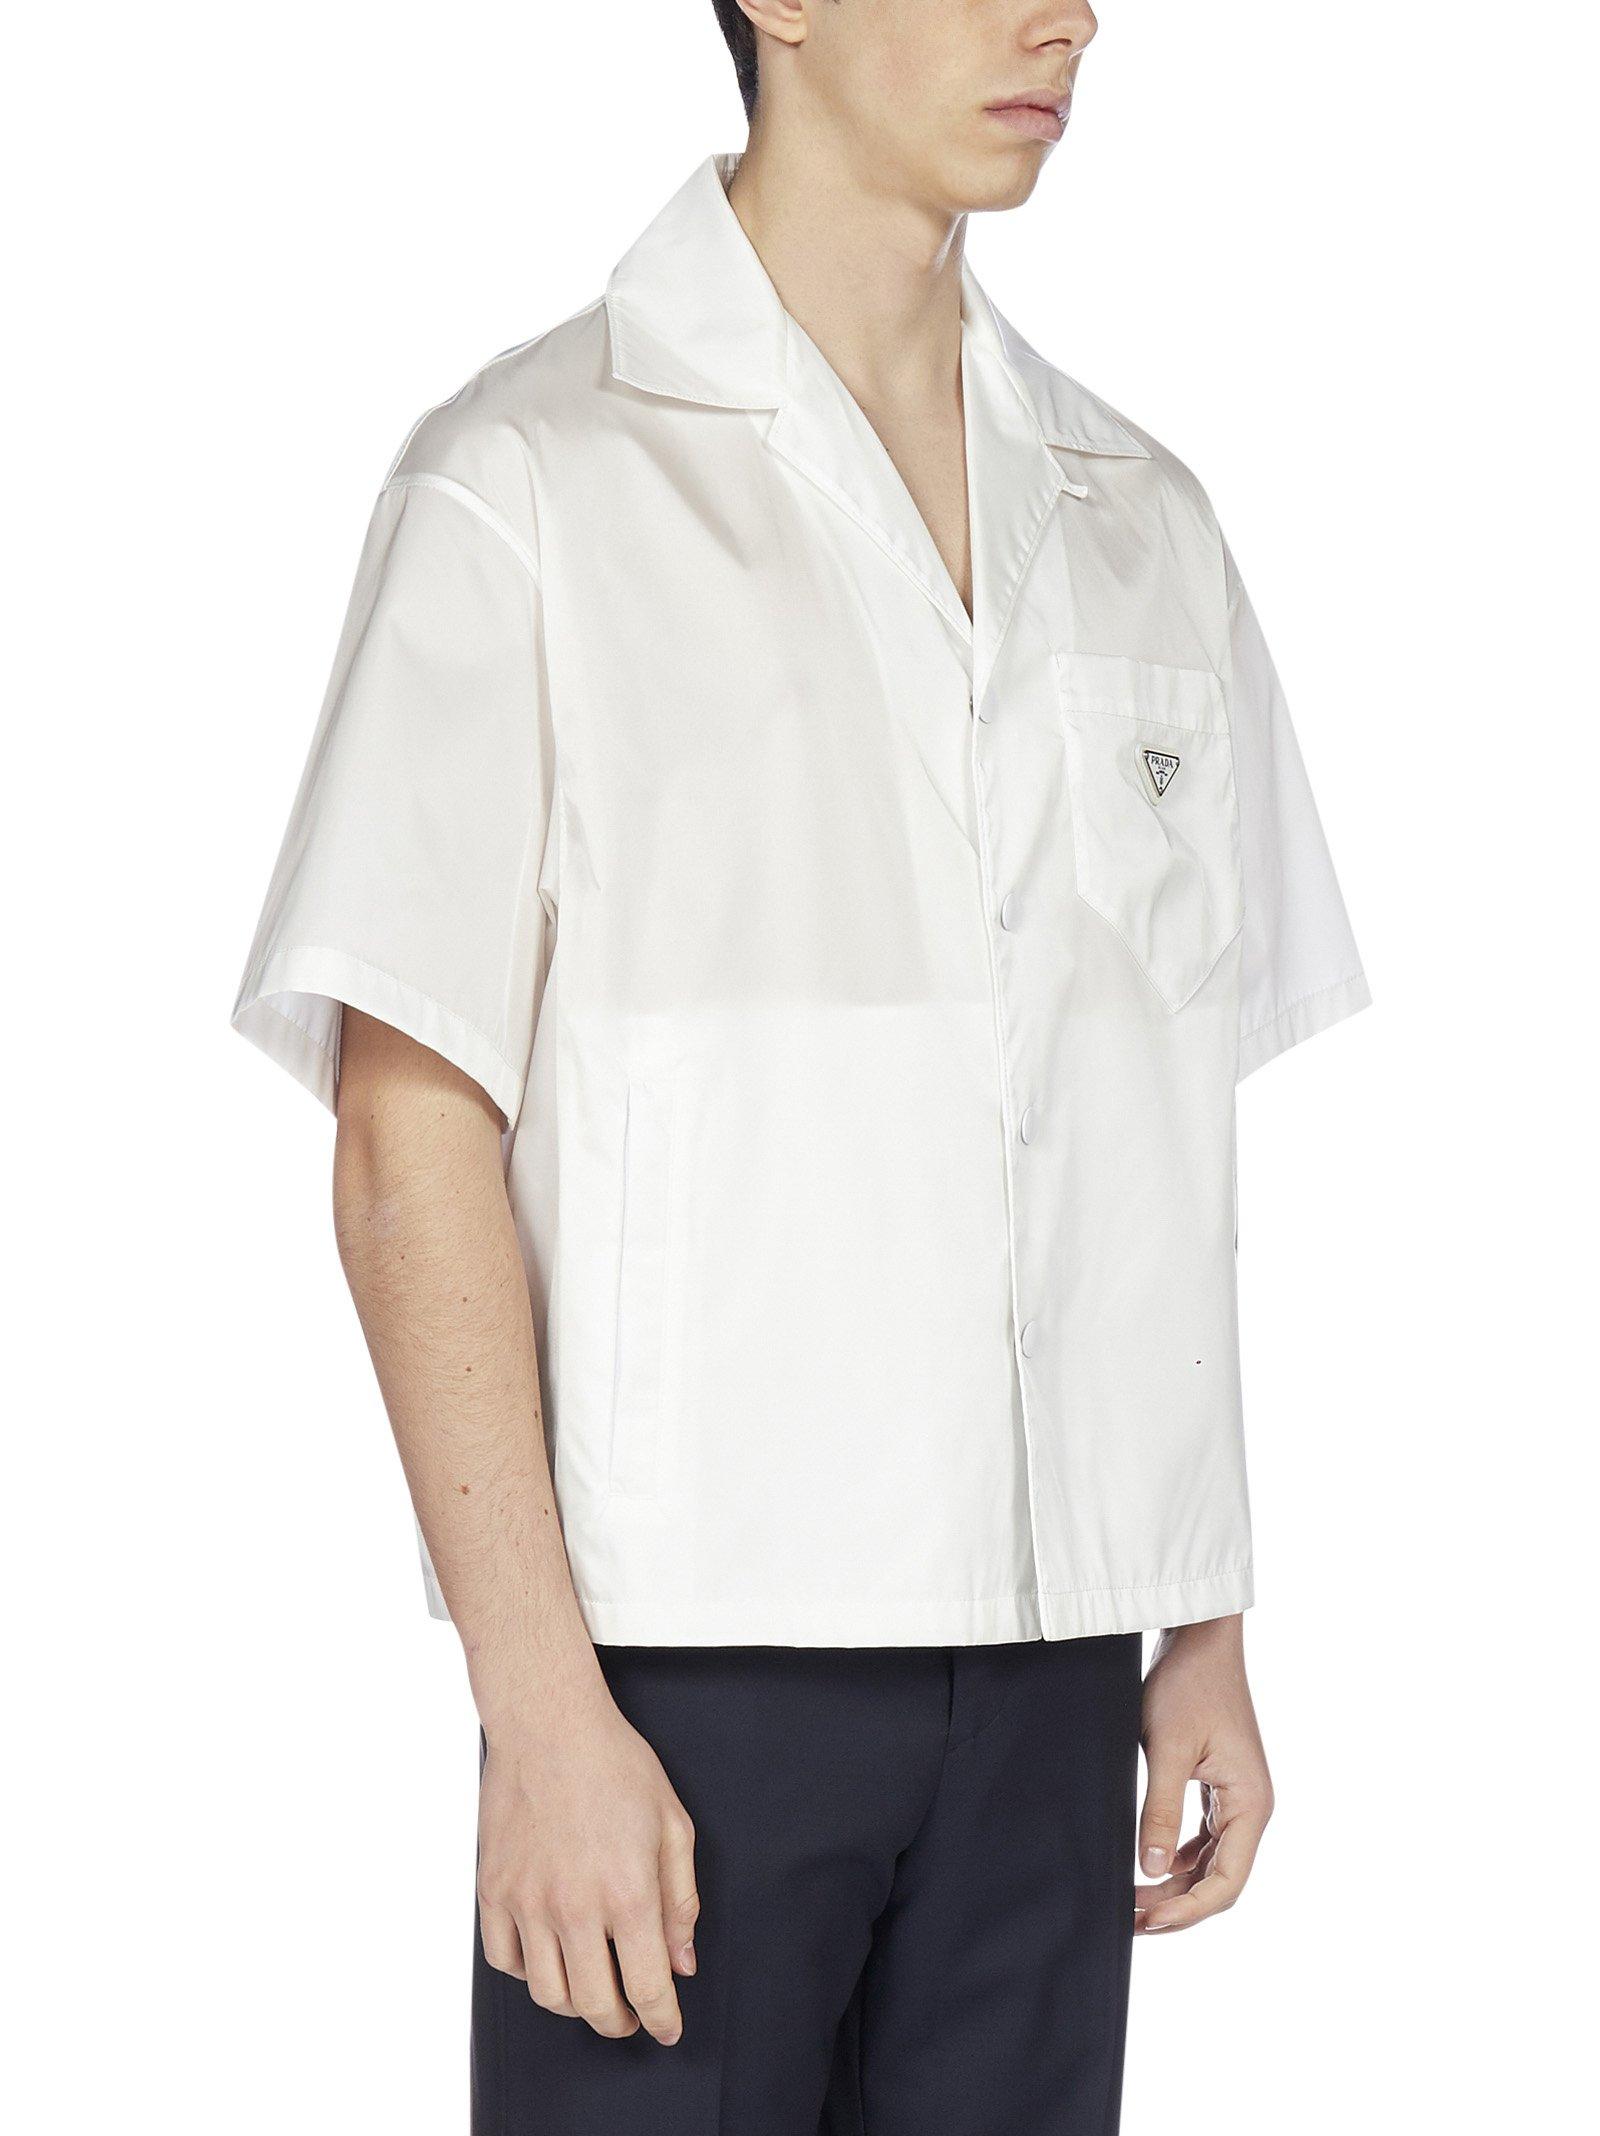 Prada Synthetic Re-nylon Short-sleeve Shirt in White for Men - Lyst